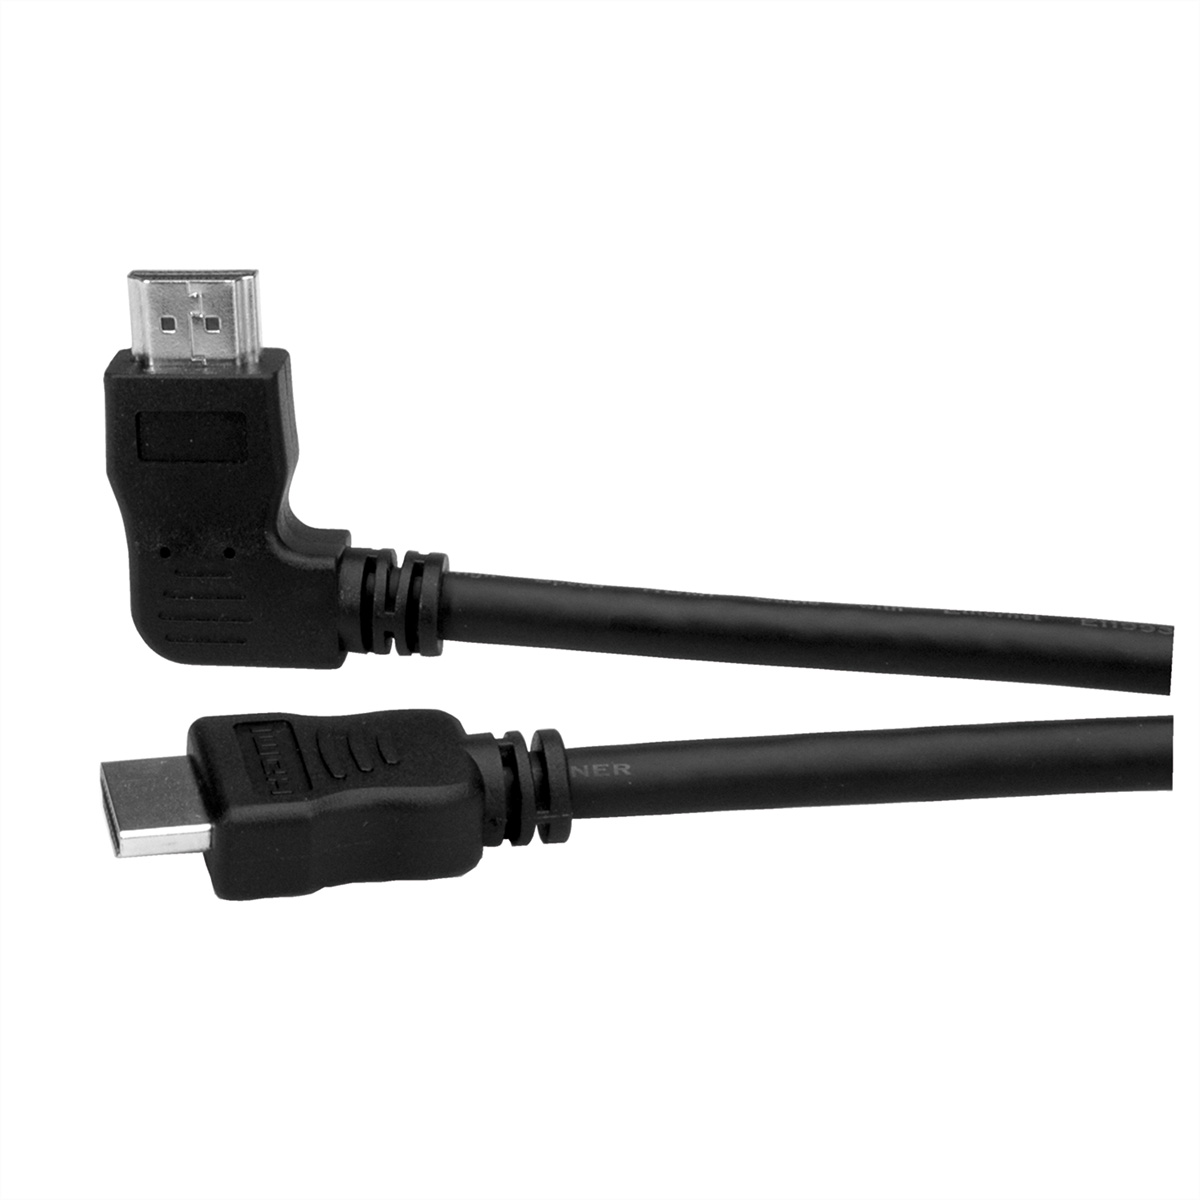 ROLINE HDMI High Speed High linksgewinkelt mit HDMI Speed Kabel mit Kabel Ethernet, Ethernet